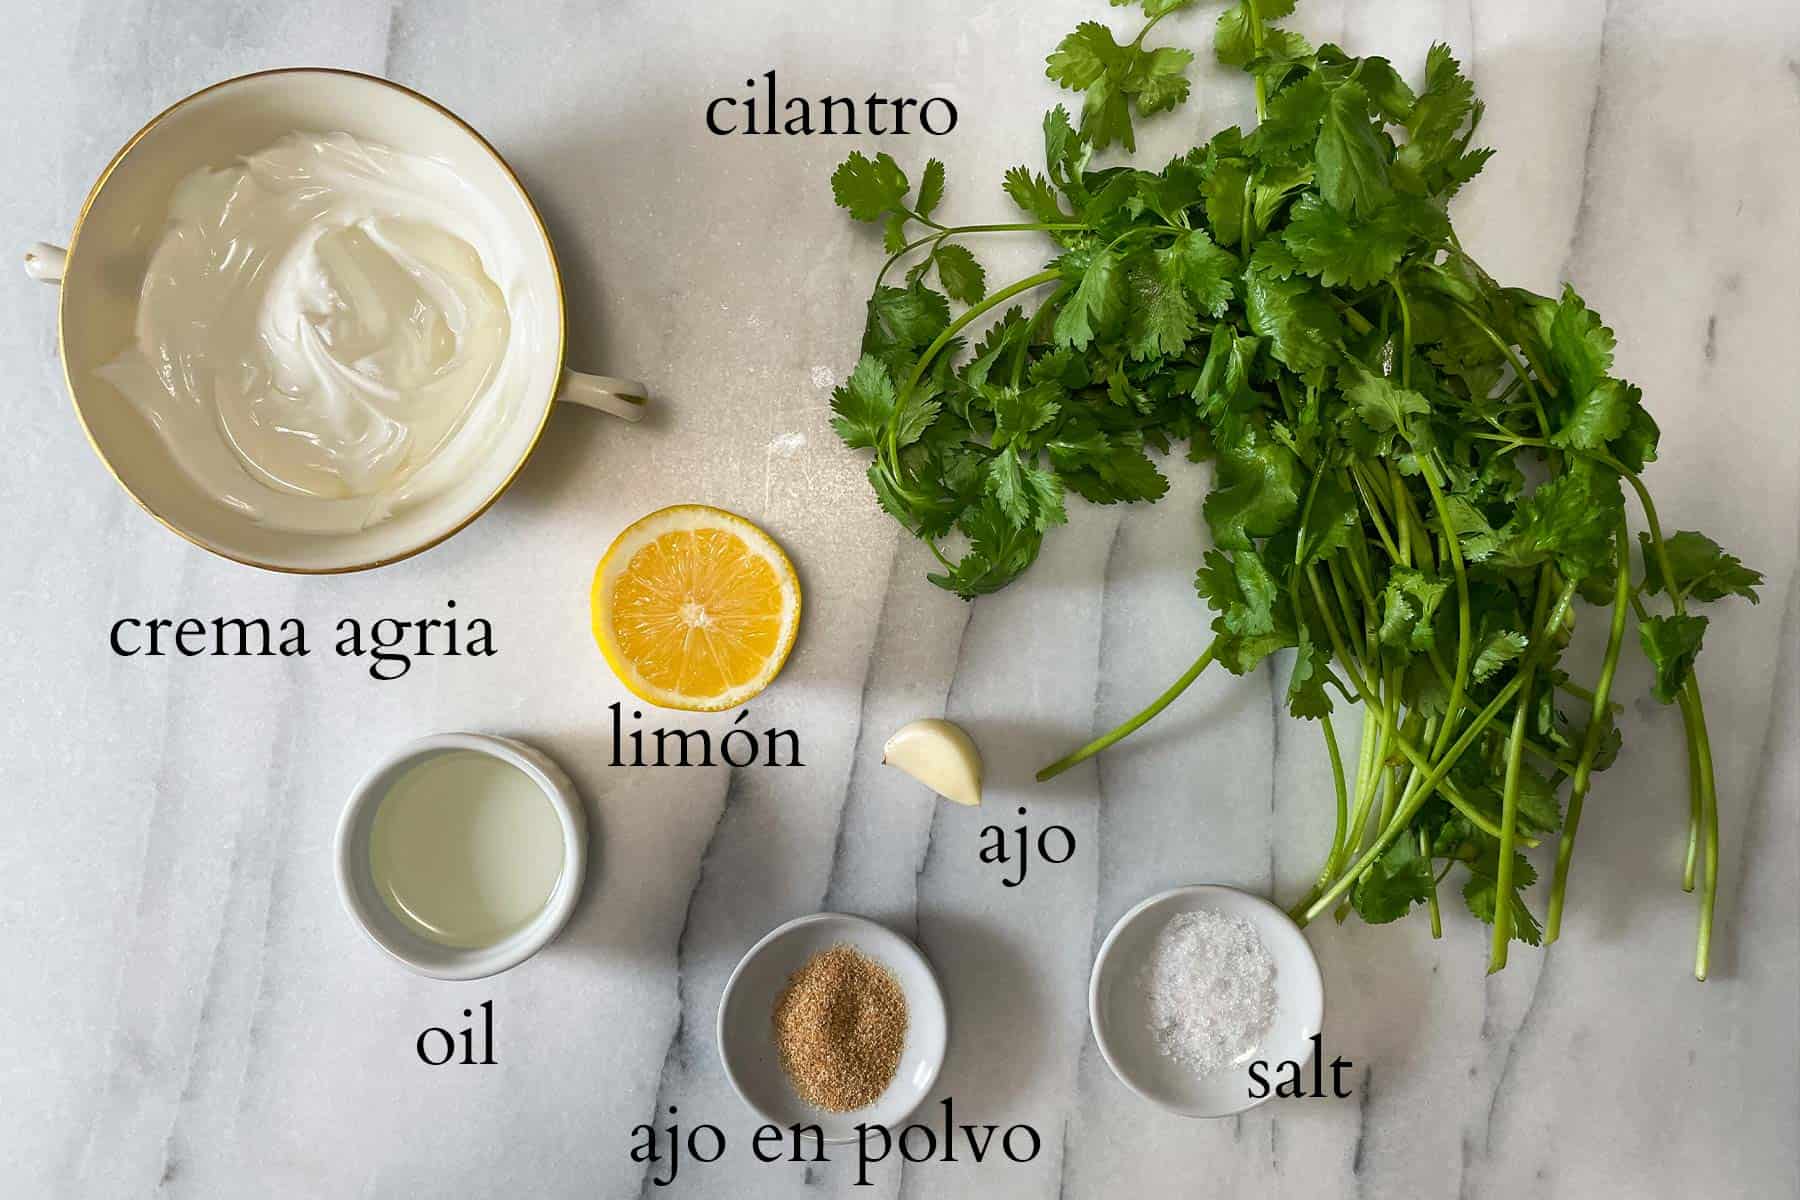 ingredientes necesarios para preparar una salsa de cilantro.